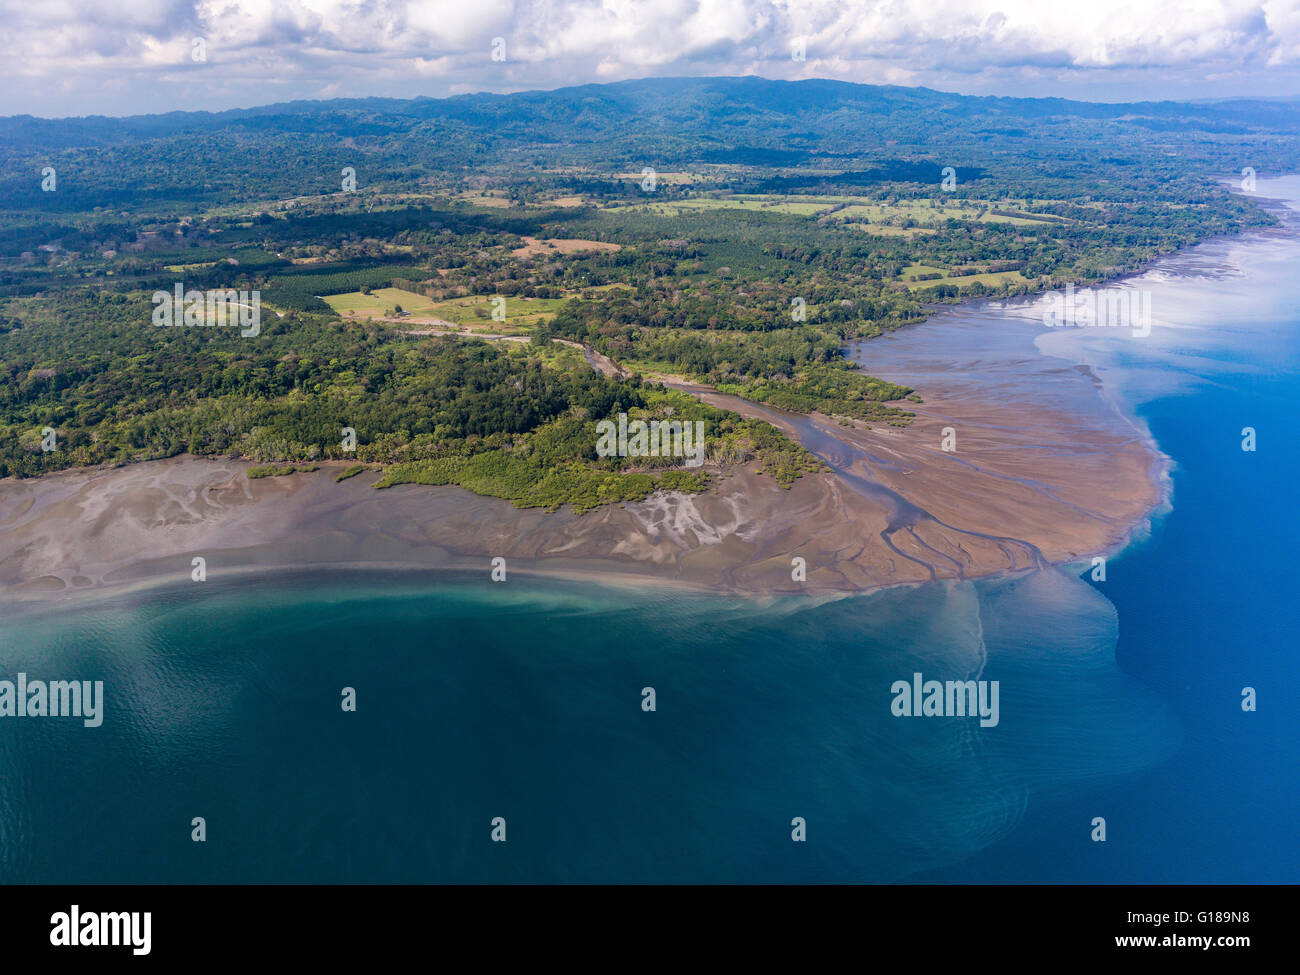 Die Halbinsel OSA, COSTA RICA - Flussdelta am westlichen Ufer des Golfo Dulce. Stockfoto